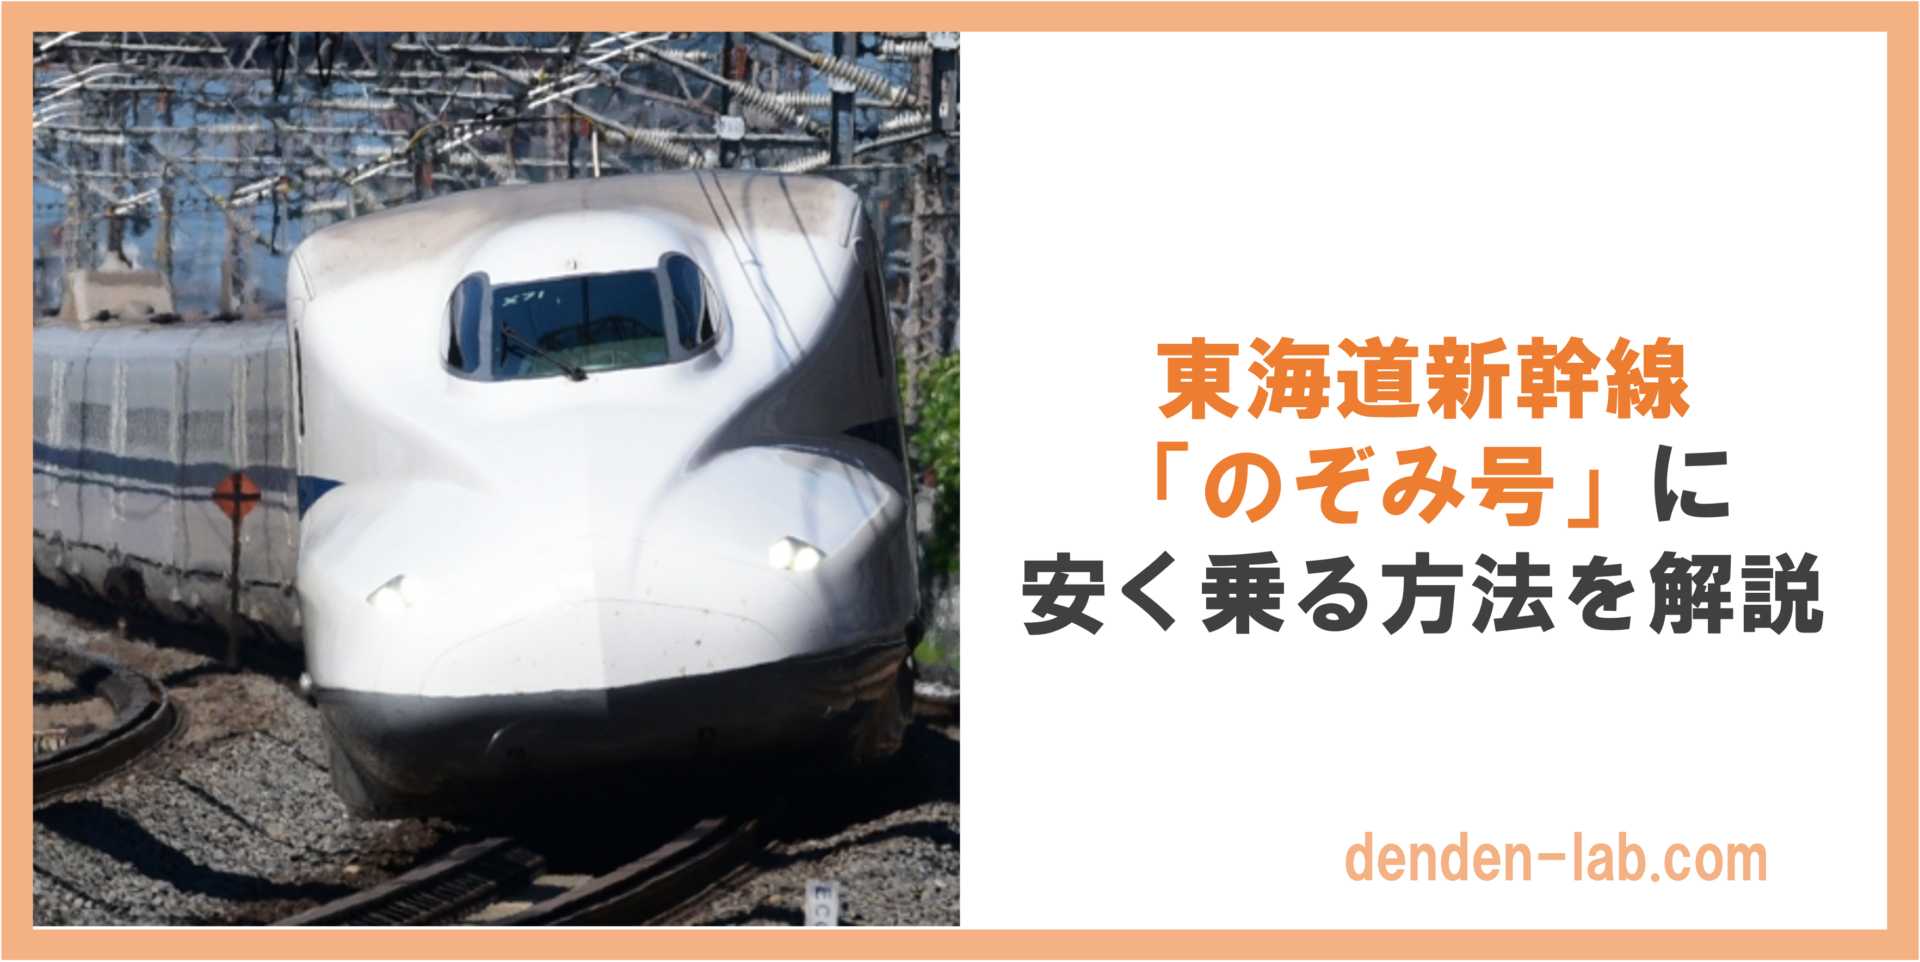 東海道新幹線 「のぞみ号」に 安く乗る方法を解説